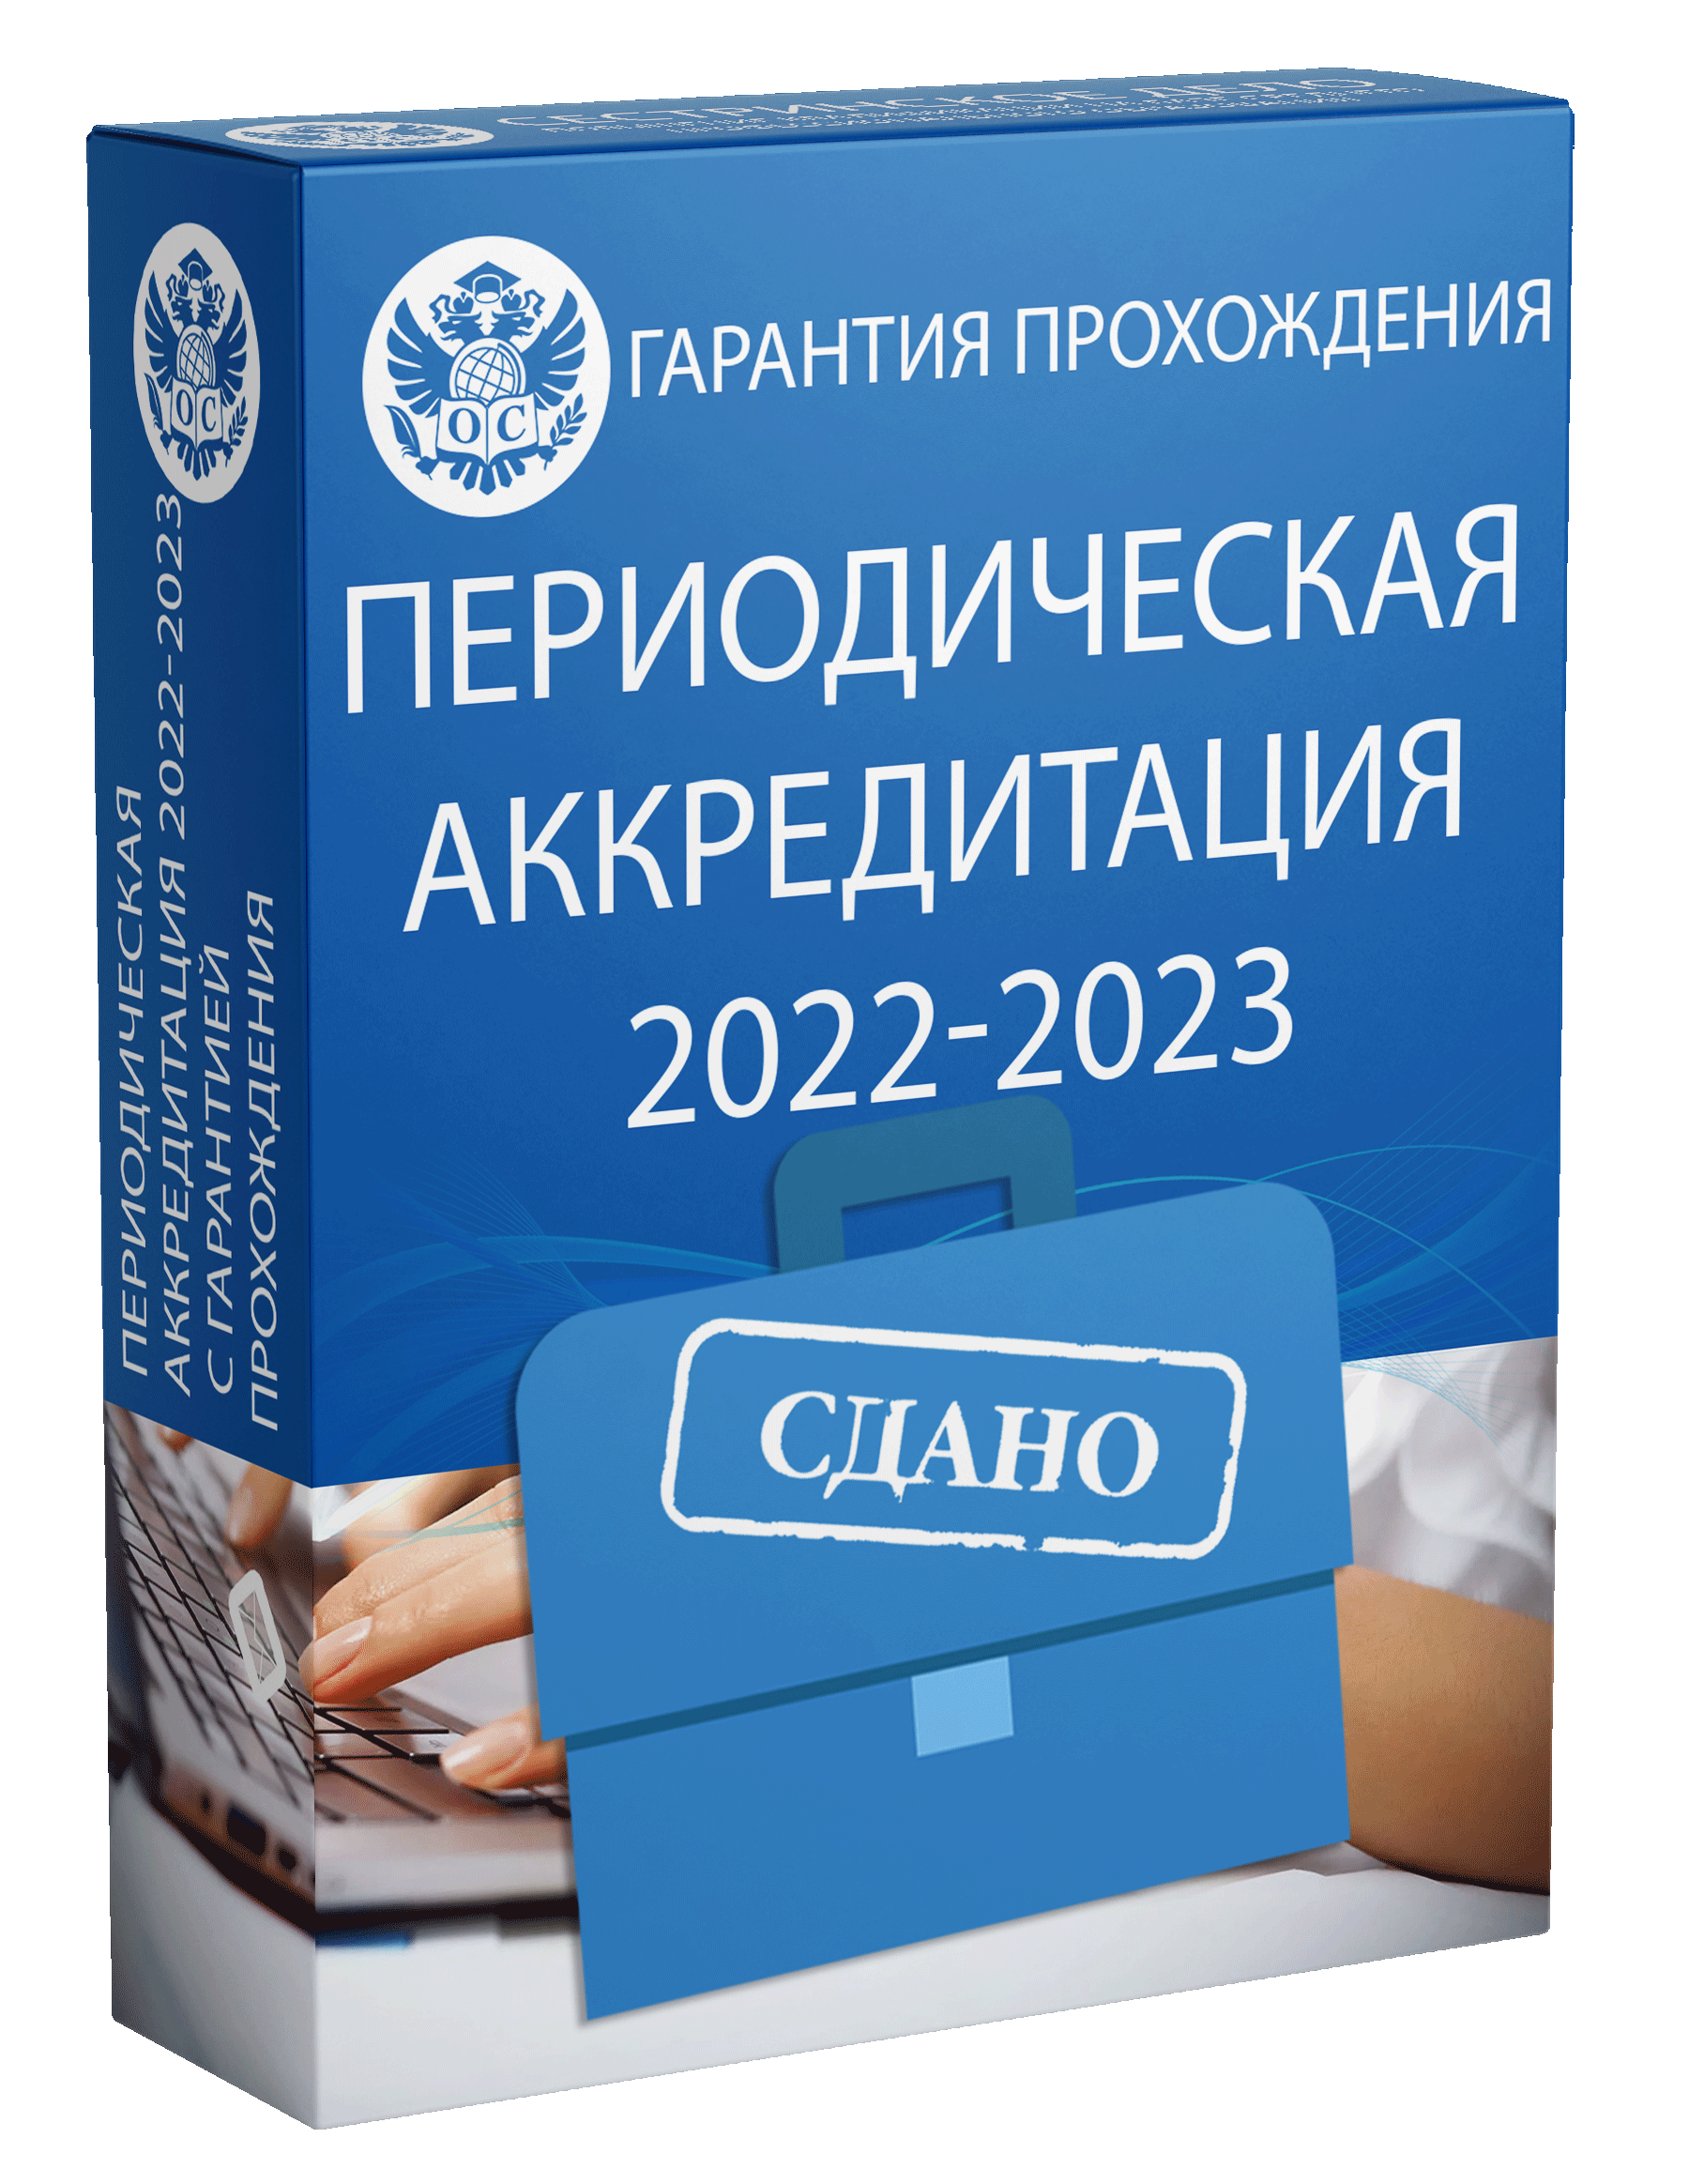 Периодическая аккредитация 2022 - 2023 помощь